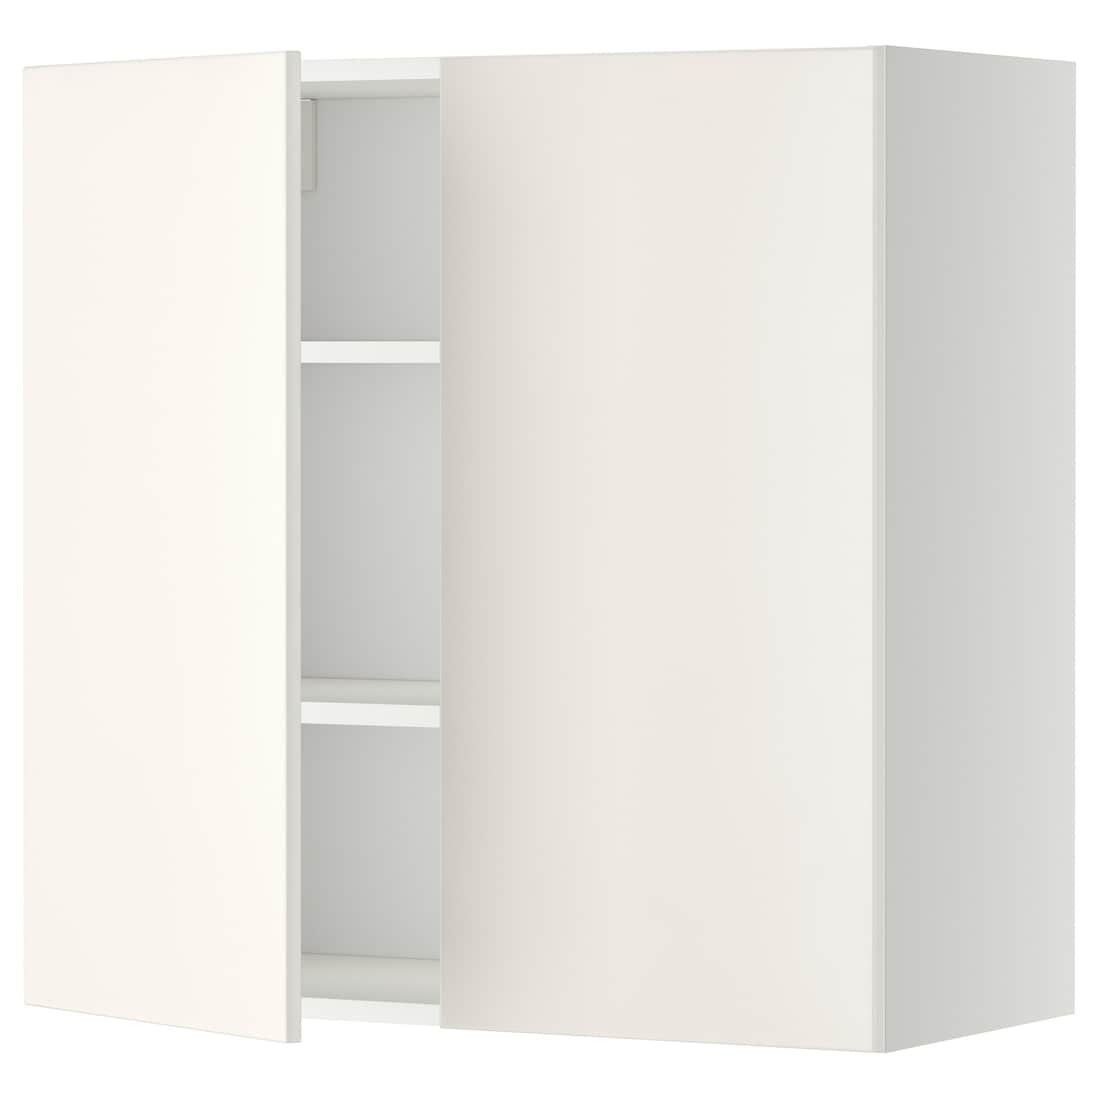 METOD МЕТОД Навесной шкаф с полками / 2 дверцы, белый / Veddinge белый, 80x80 см